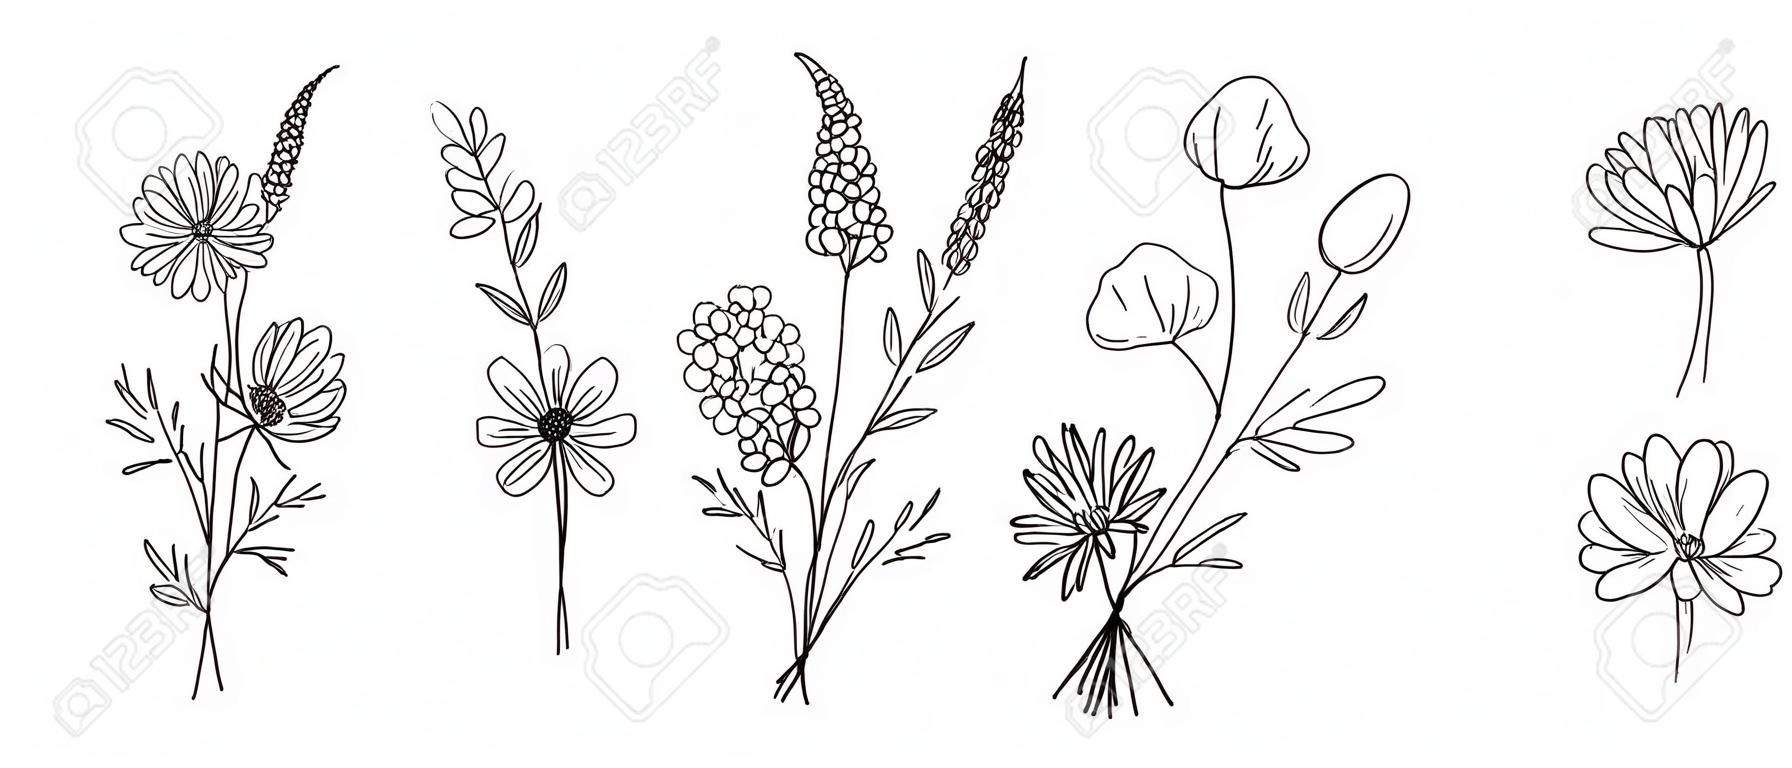 Conjunto de buquês de arte de linha de flores silvestres. Flores de meadow, ervas, plantas selvagens, elementos botânicos desenhados à mão para projetos de design. Ilustração vetorial.